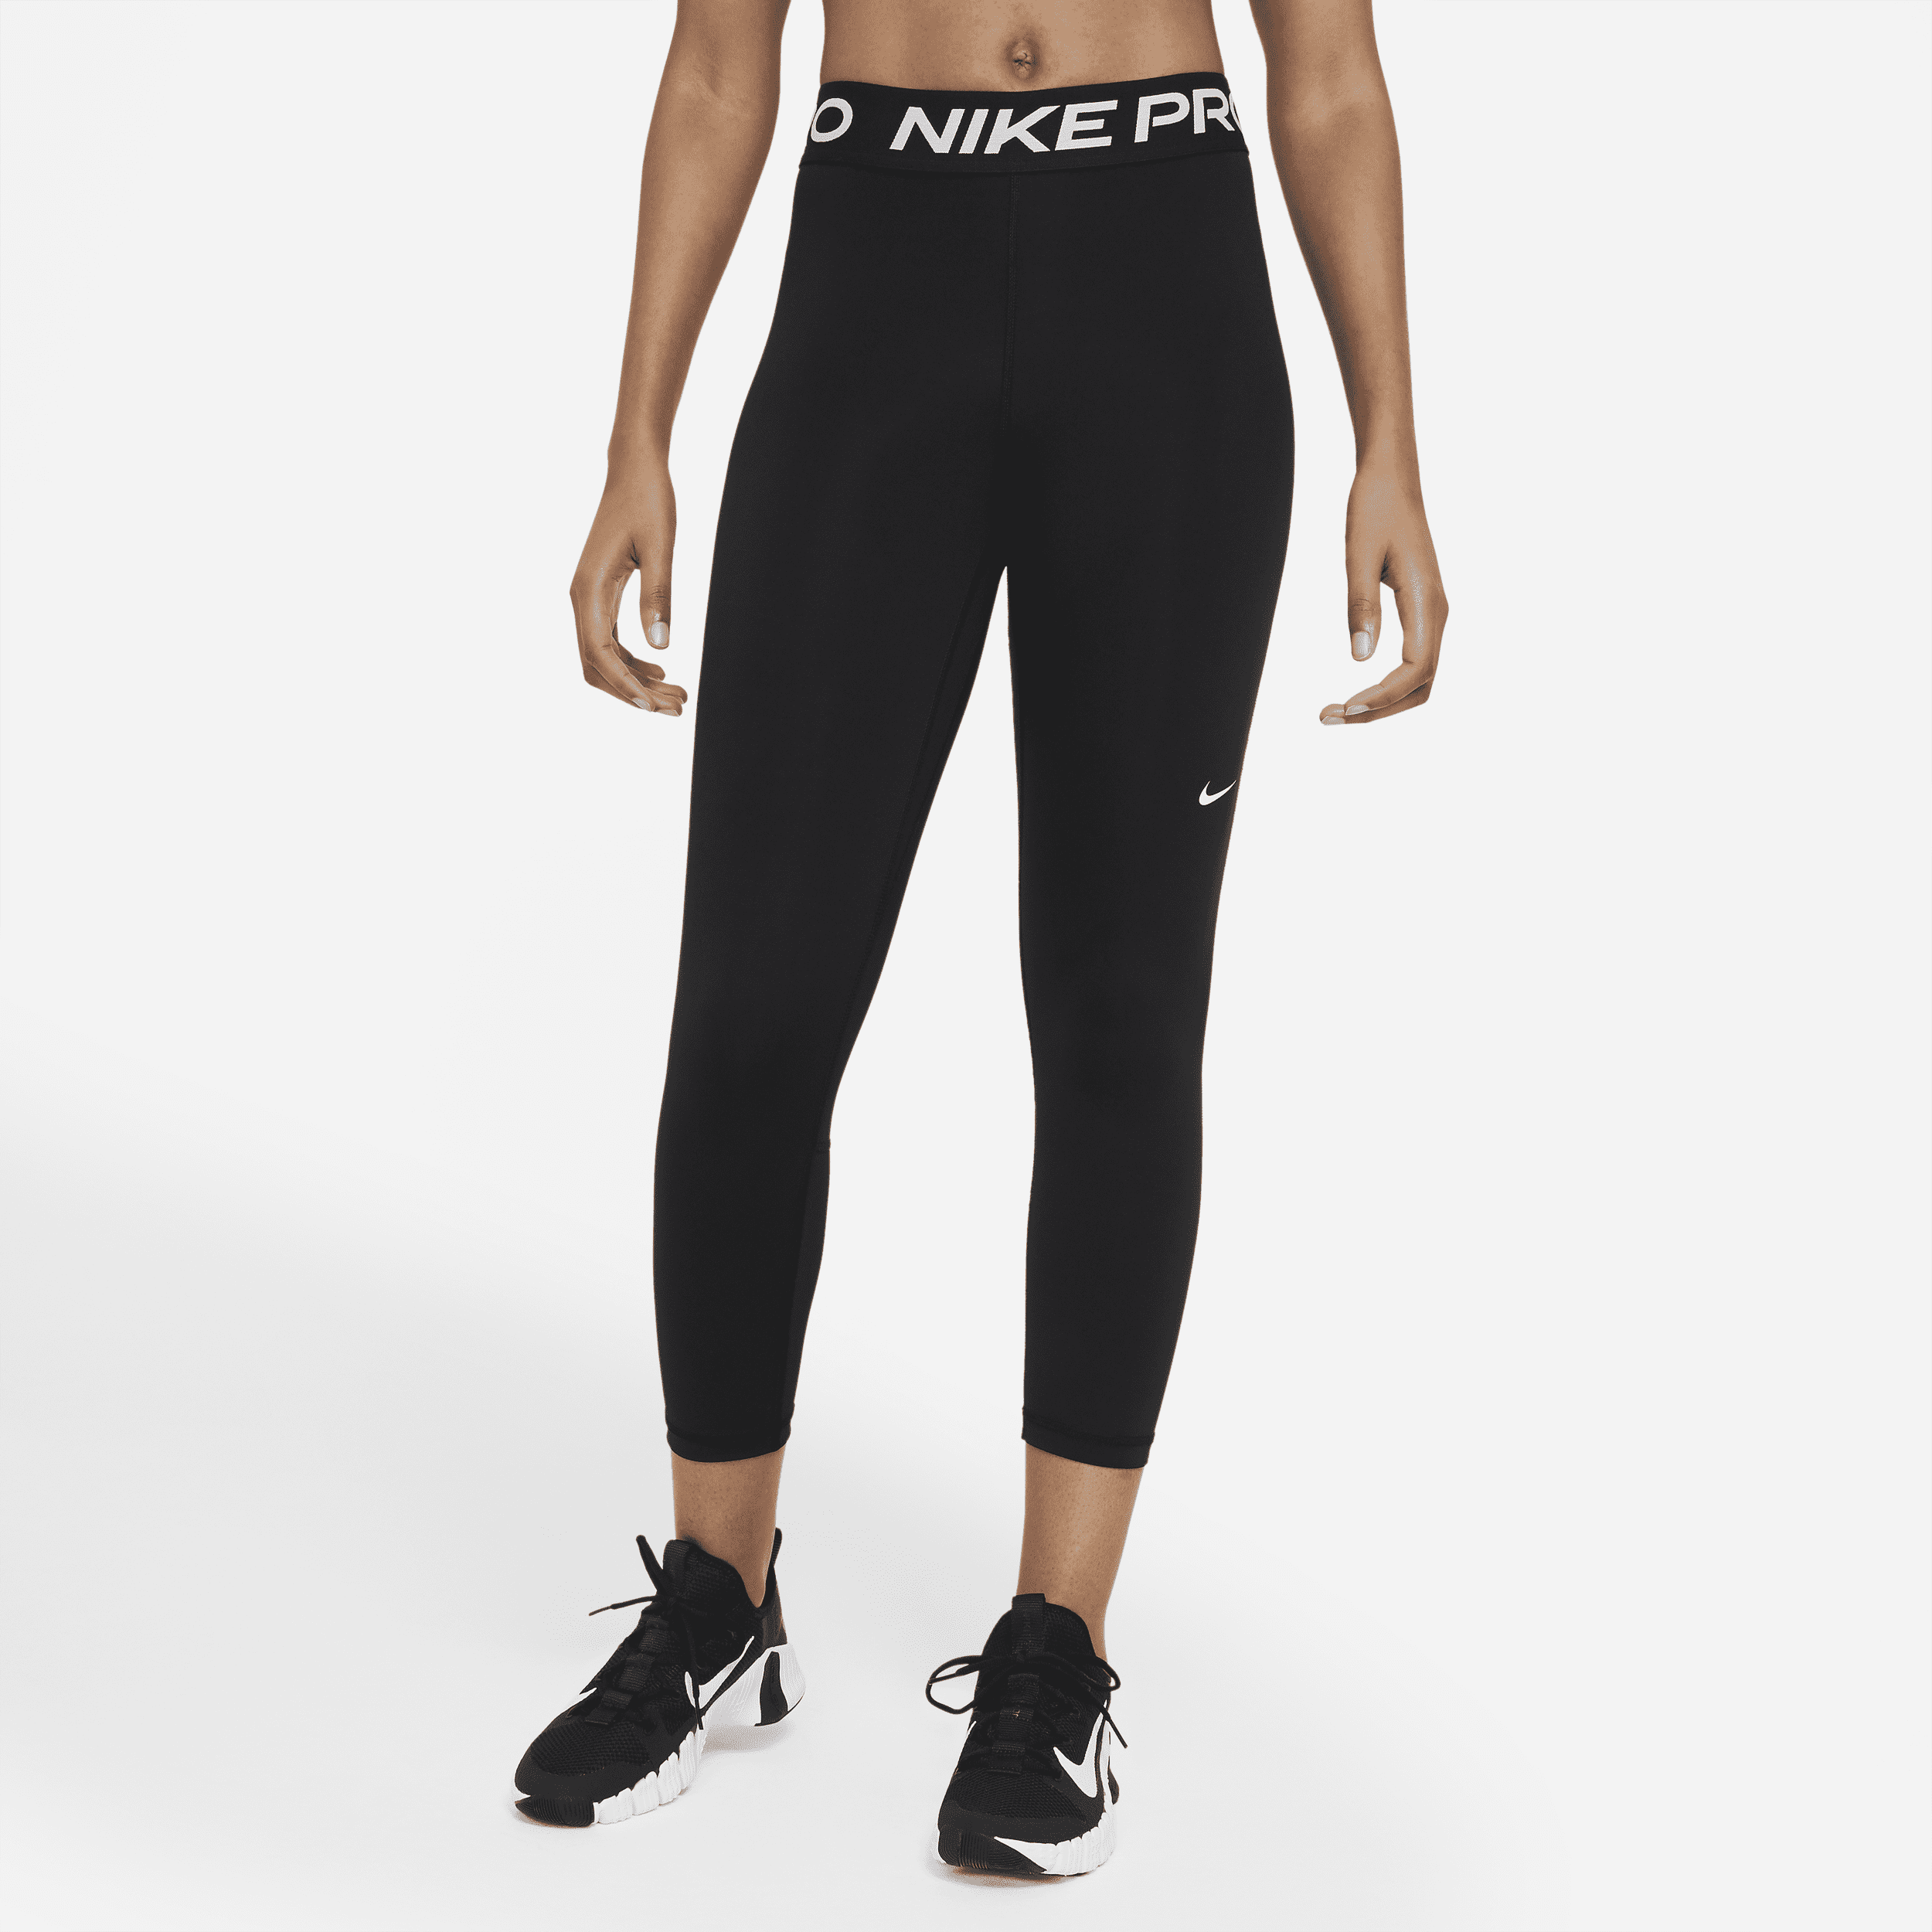 Leggings a lunghezza ridotta e inserti in mesh a vita media Nike Pro 365 – Donna - Nero